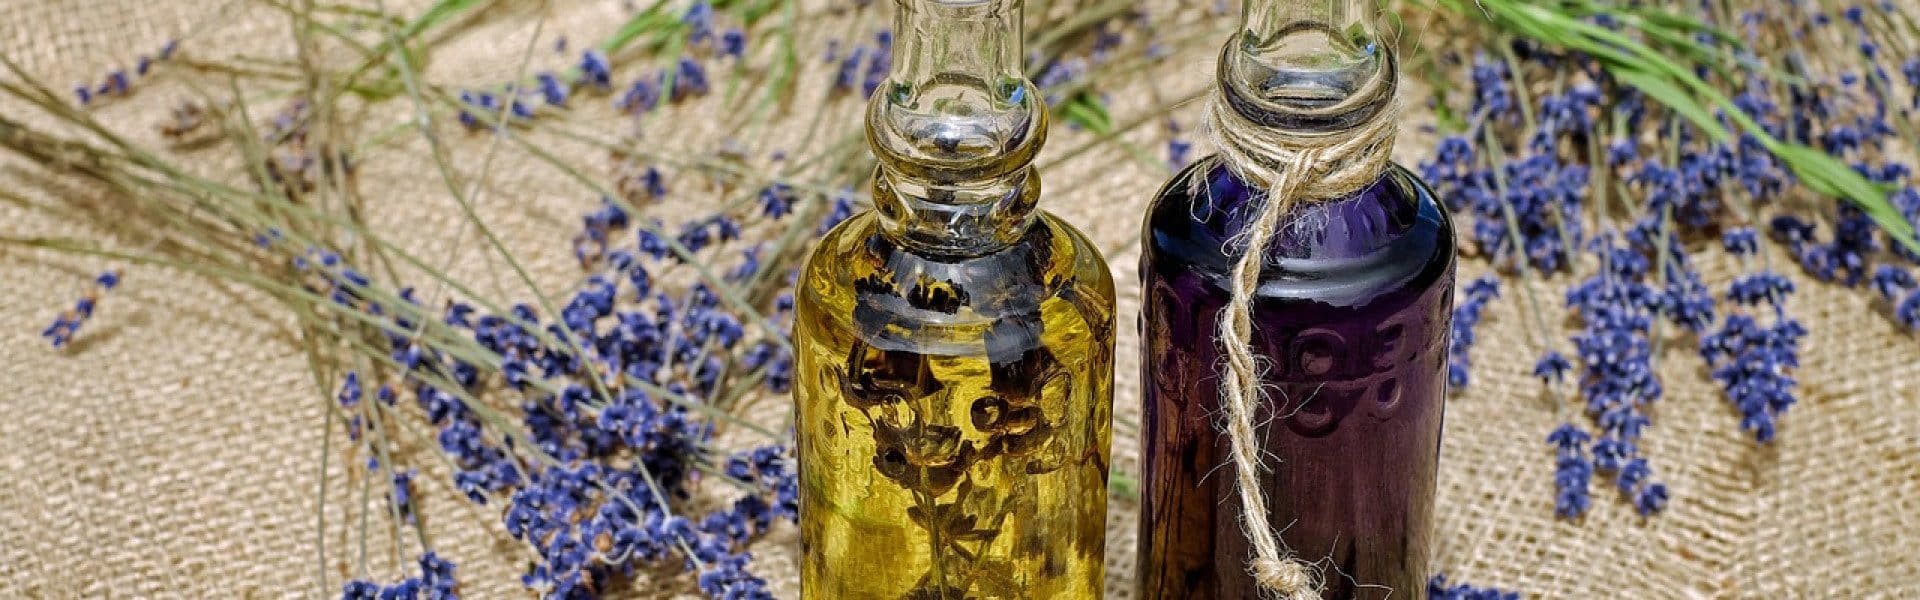 Quelle huile choisir pour vos préparations ?